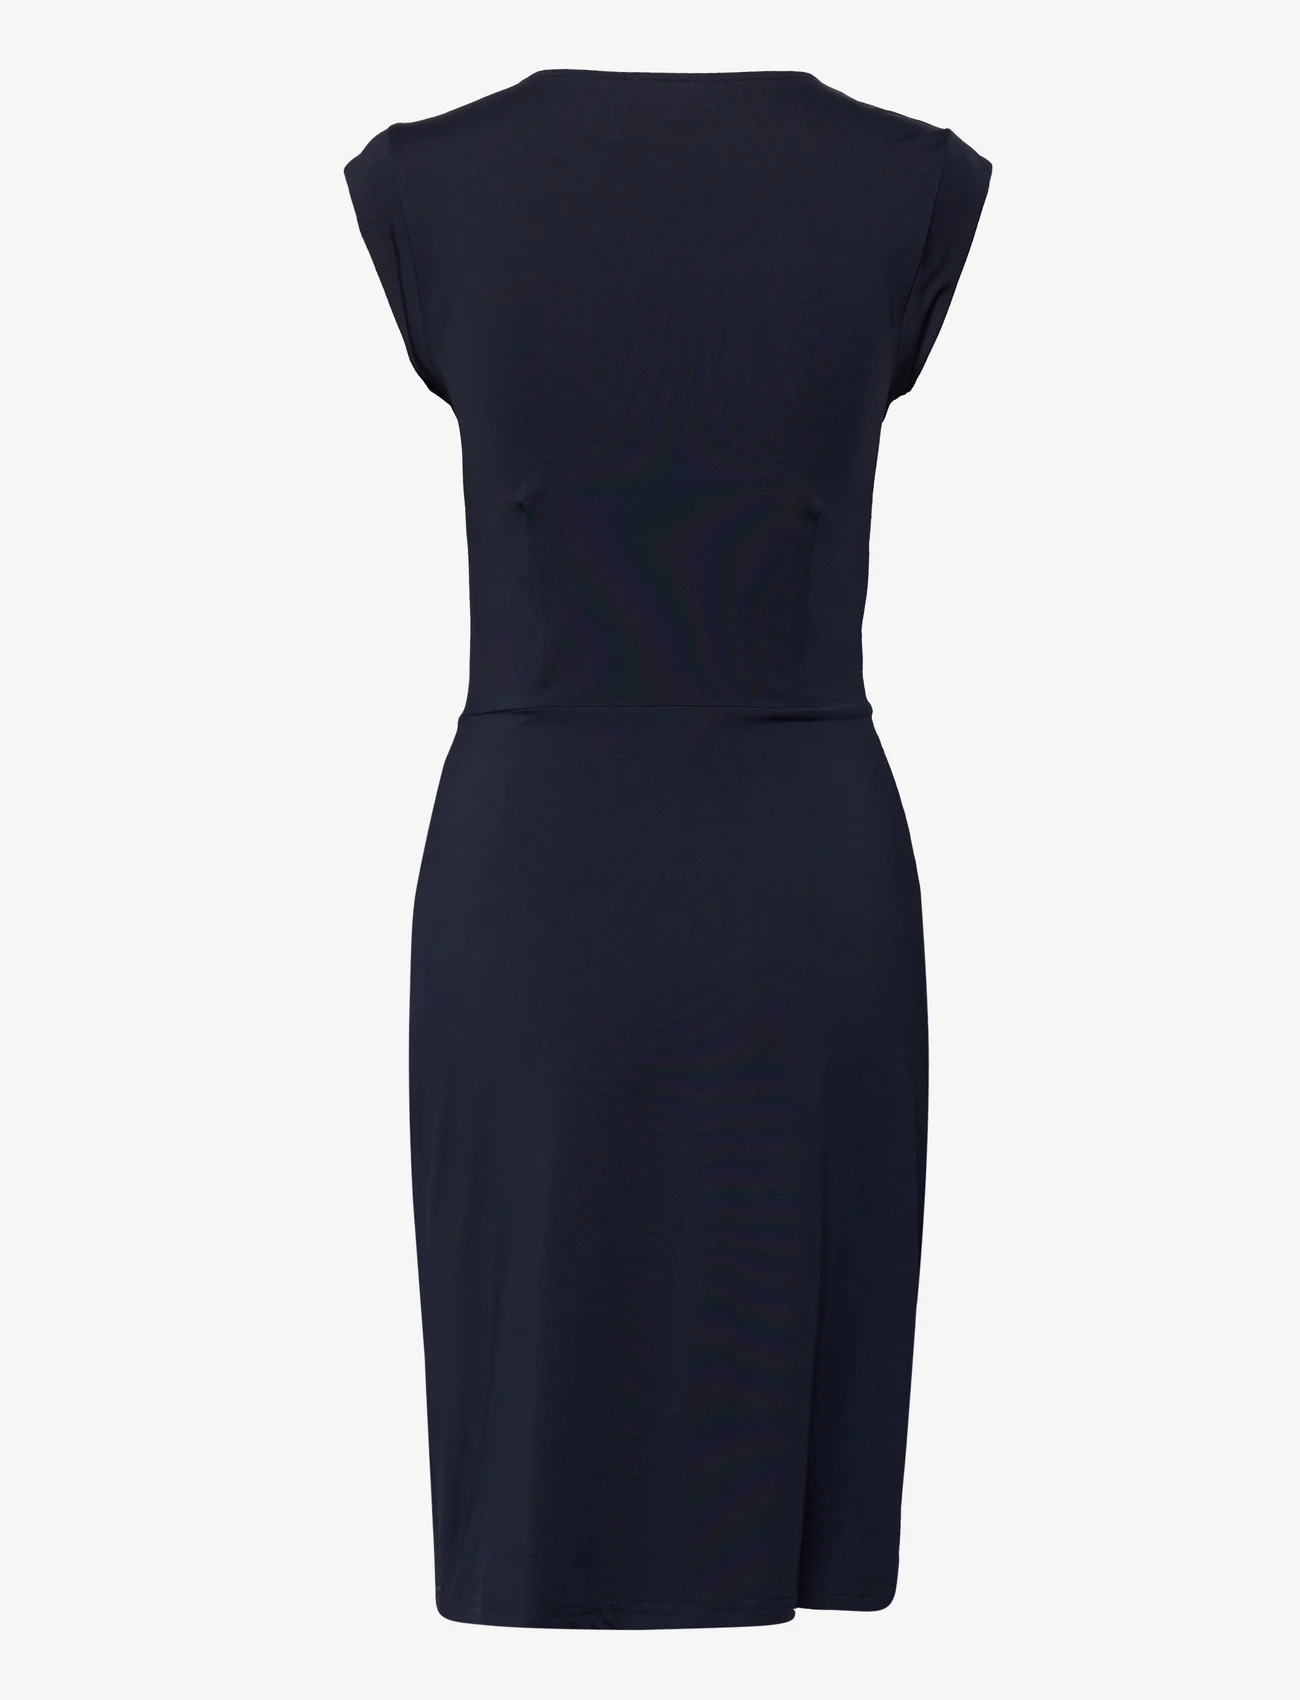 Rosemunde - Dress - odzież imprezowa w cenach outletowych - dark blue - 1